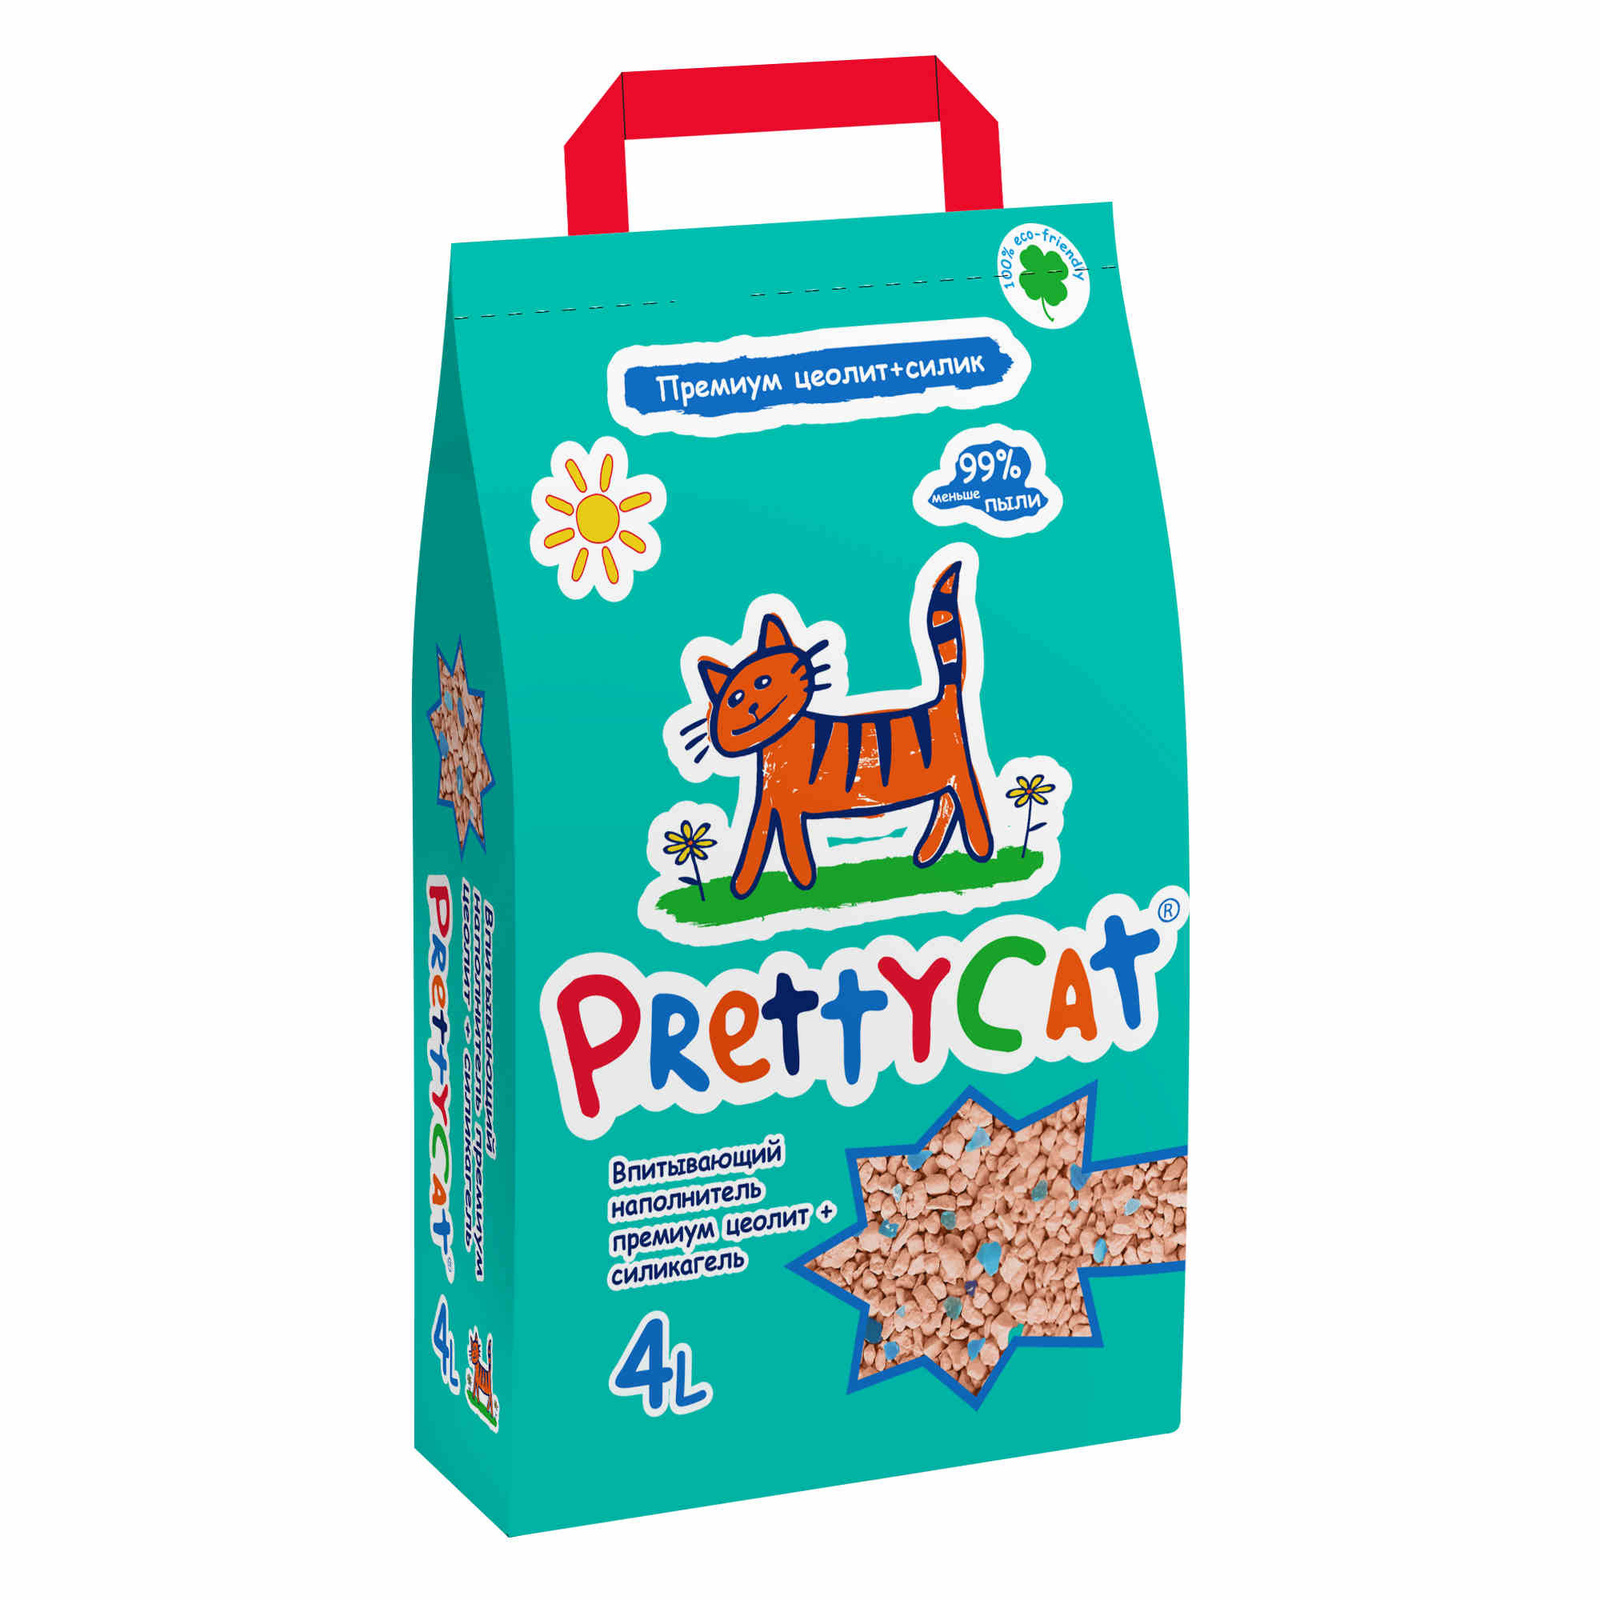 PrettyCat PrettyCat наполнитель впитывающий для кошачьих туалетов Premium (20 кг) prettycat prettycat наполнитель впитывающий для кошачьих туалетов 10 кг